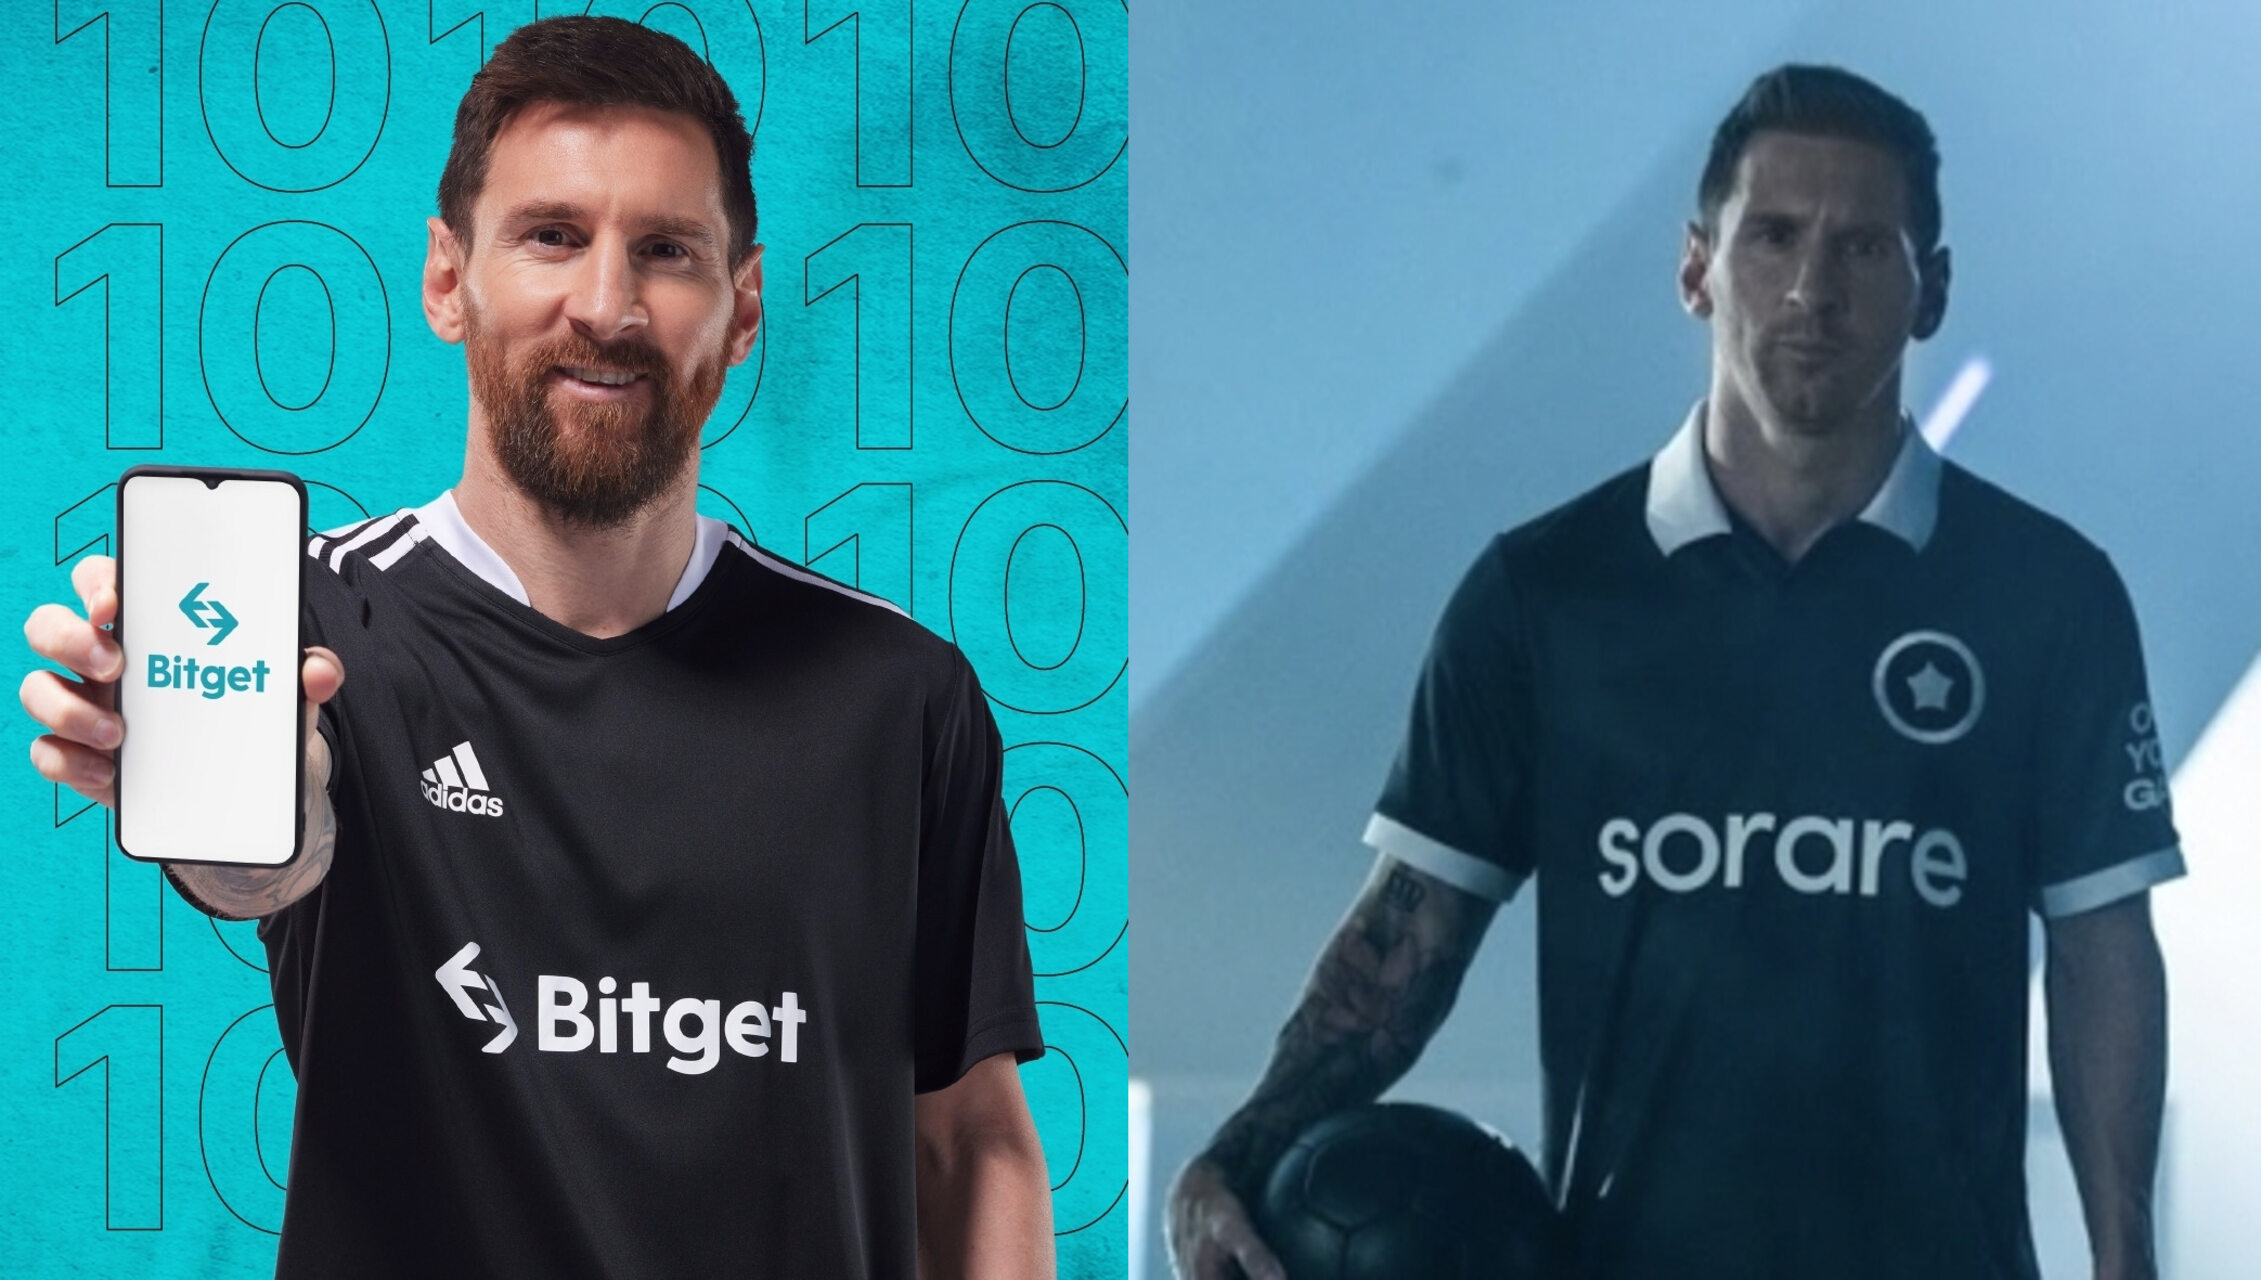 Kemitraan strategis Bitget dan Sorare dengan Lionel Messi